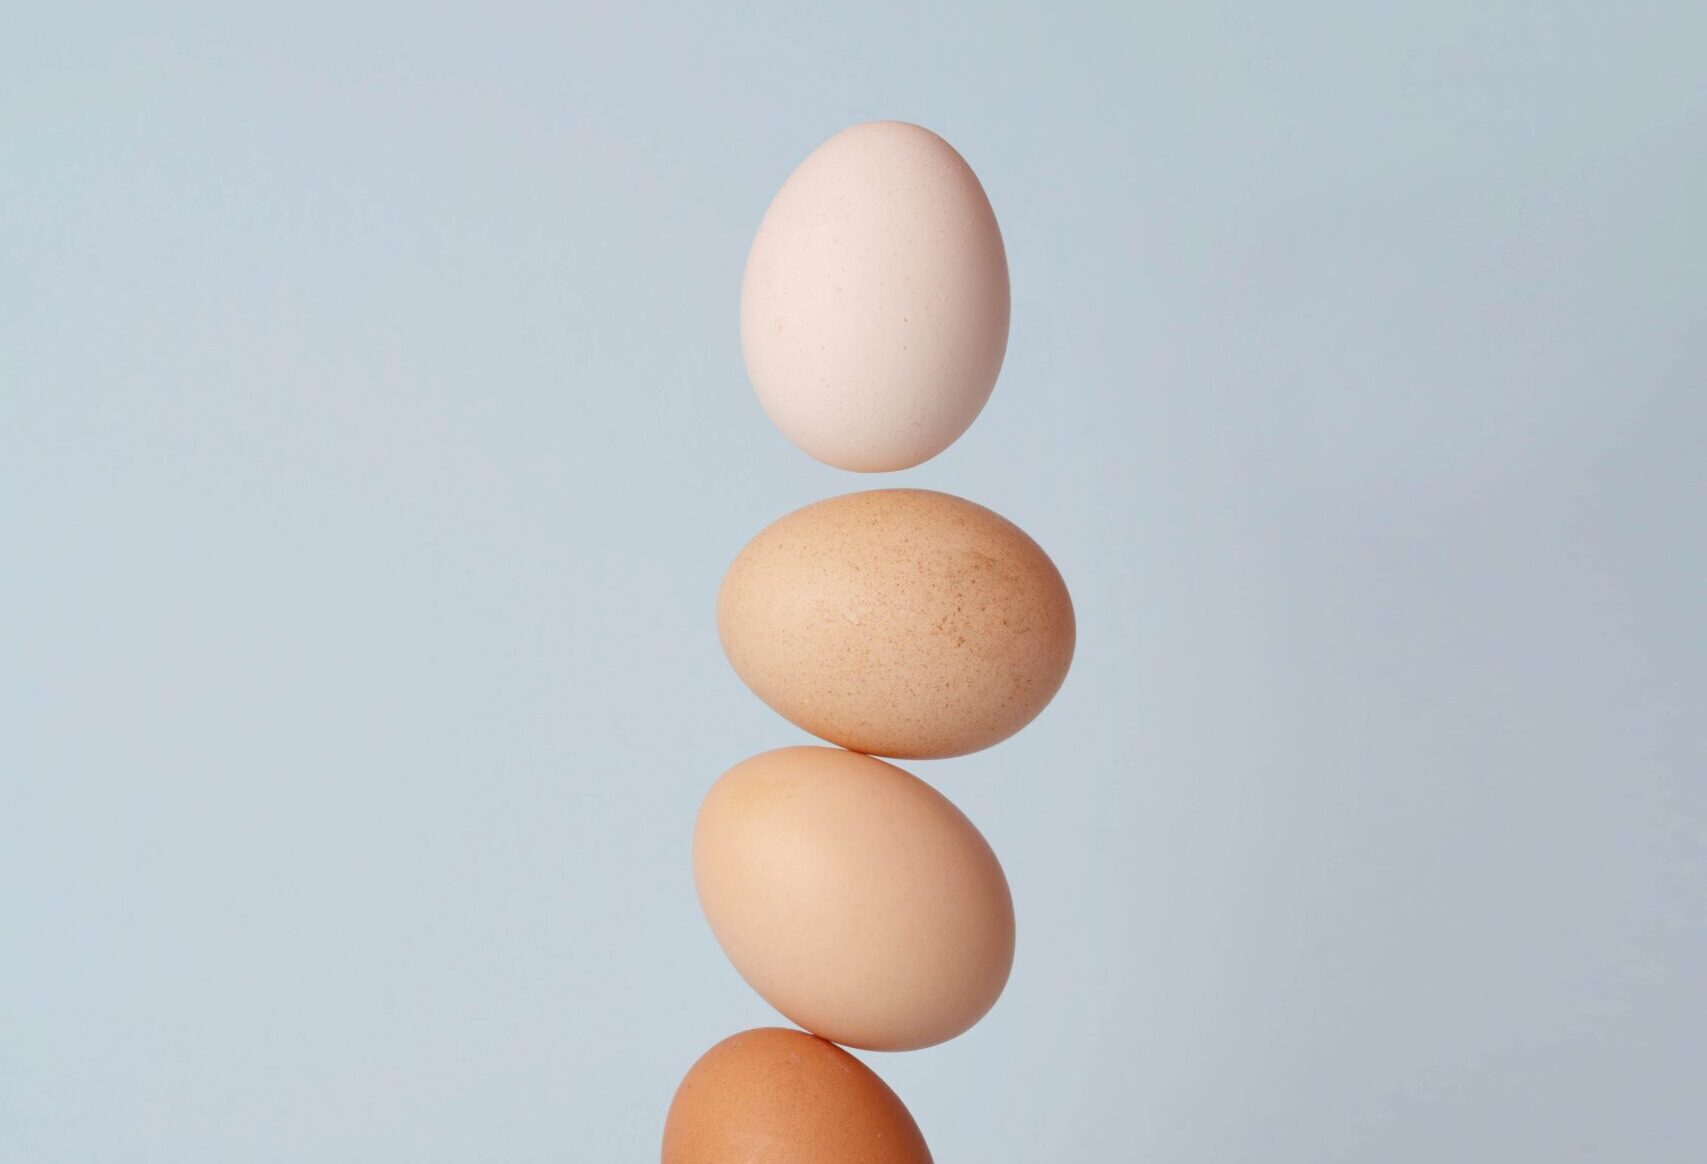 Omelette Maker or Egg Breaker – What Are Your Recruitment Needs?